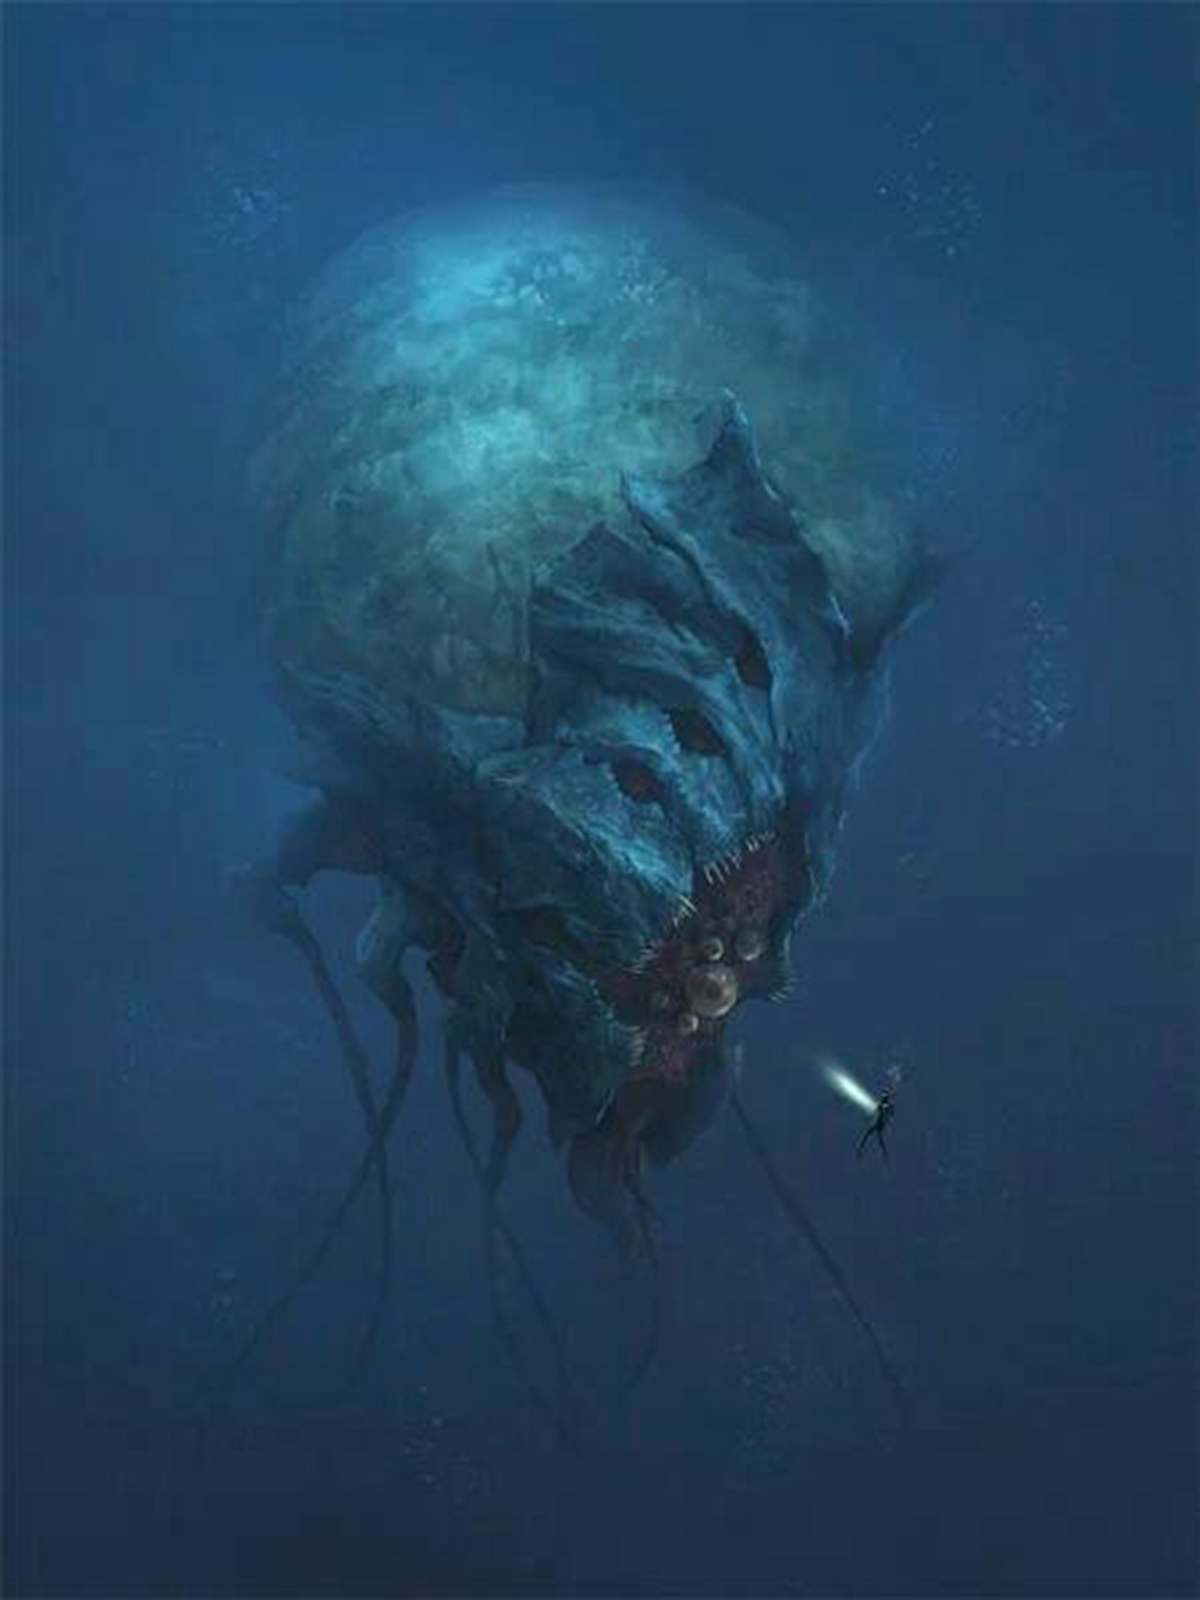 听说过深海恐惧症吗?幽暗海底,深海巨怪,会让某些人浑身发抖